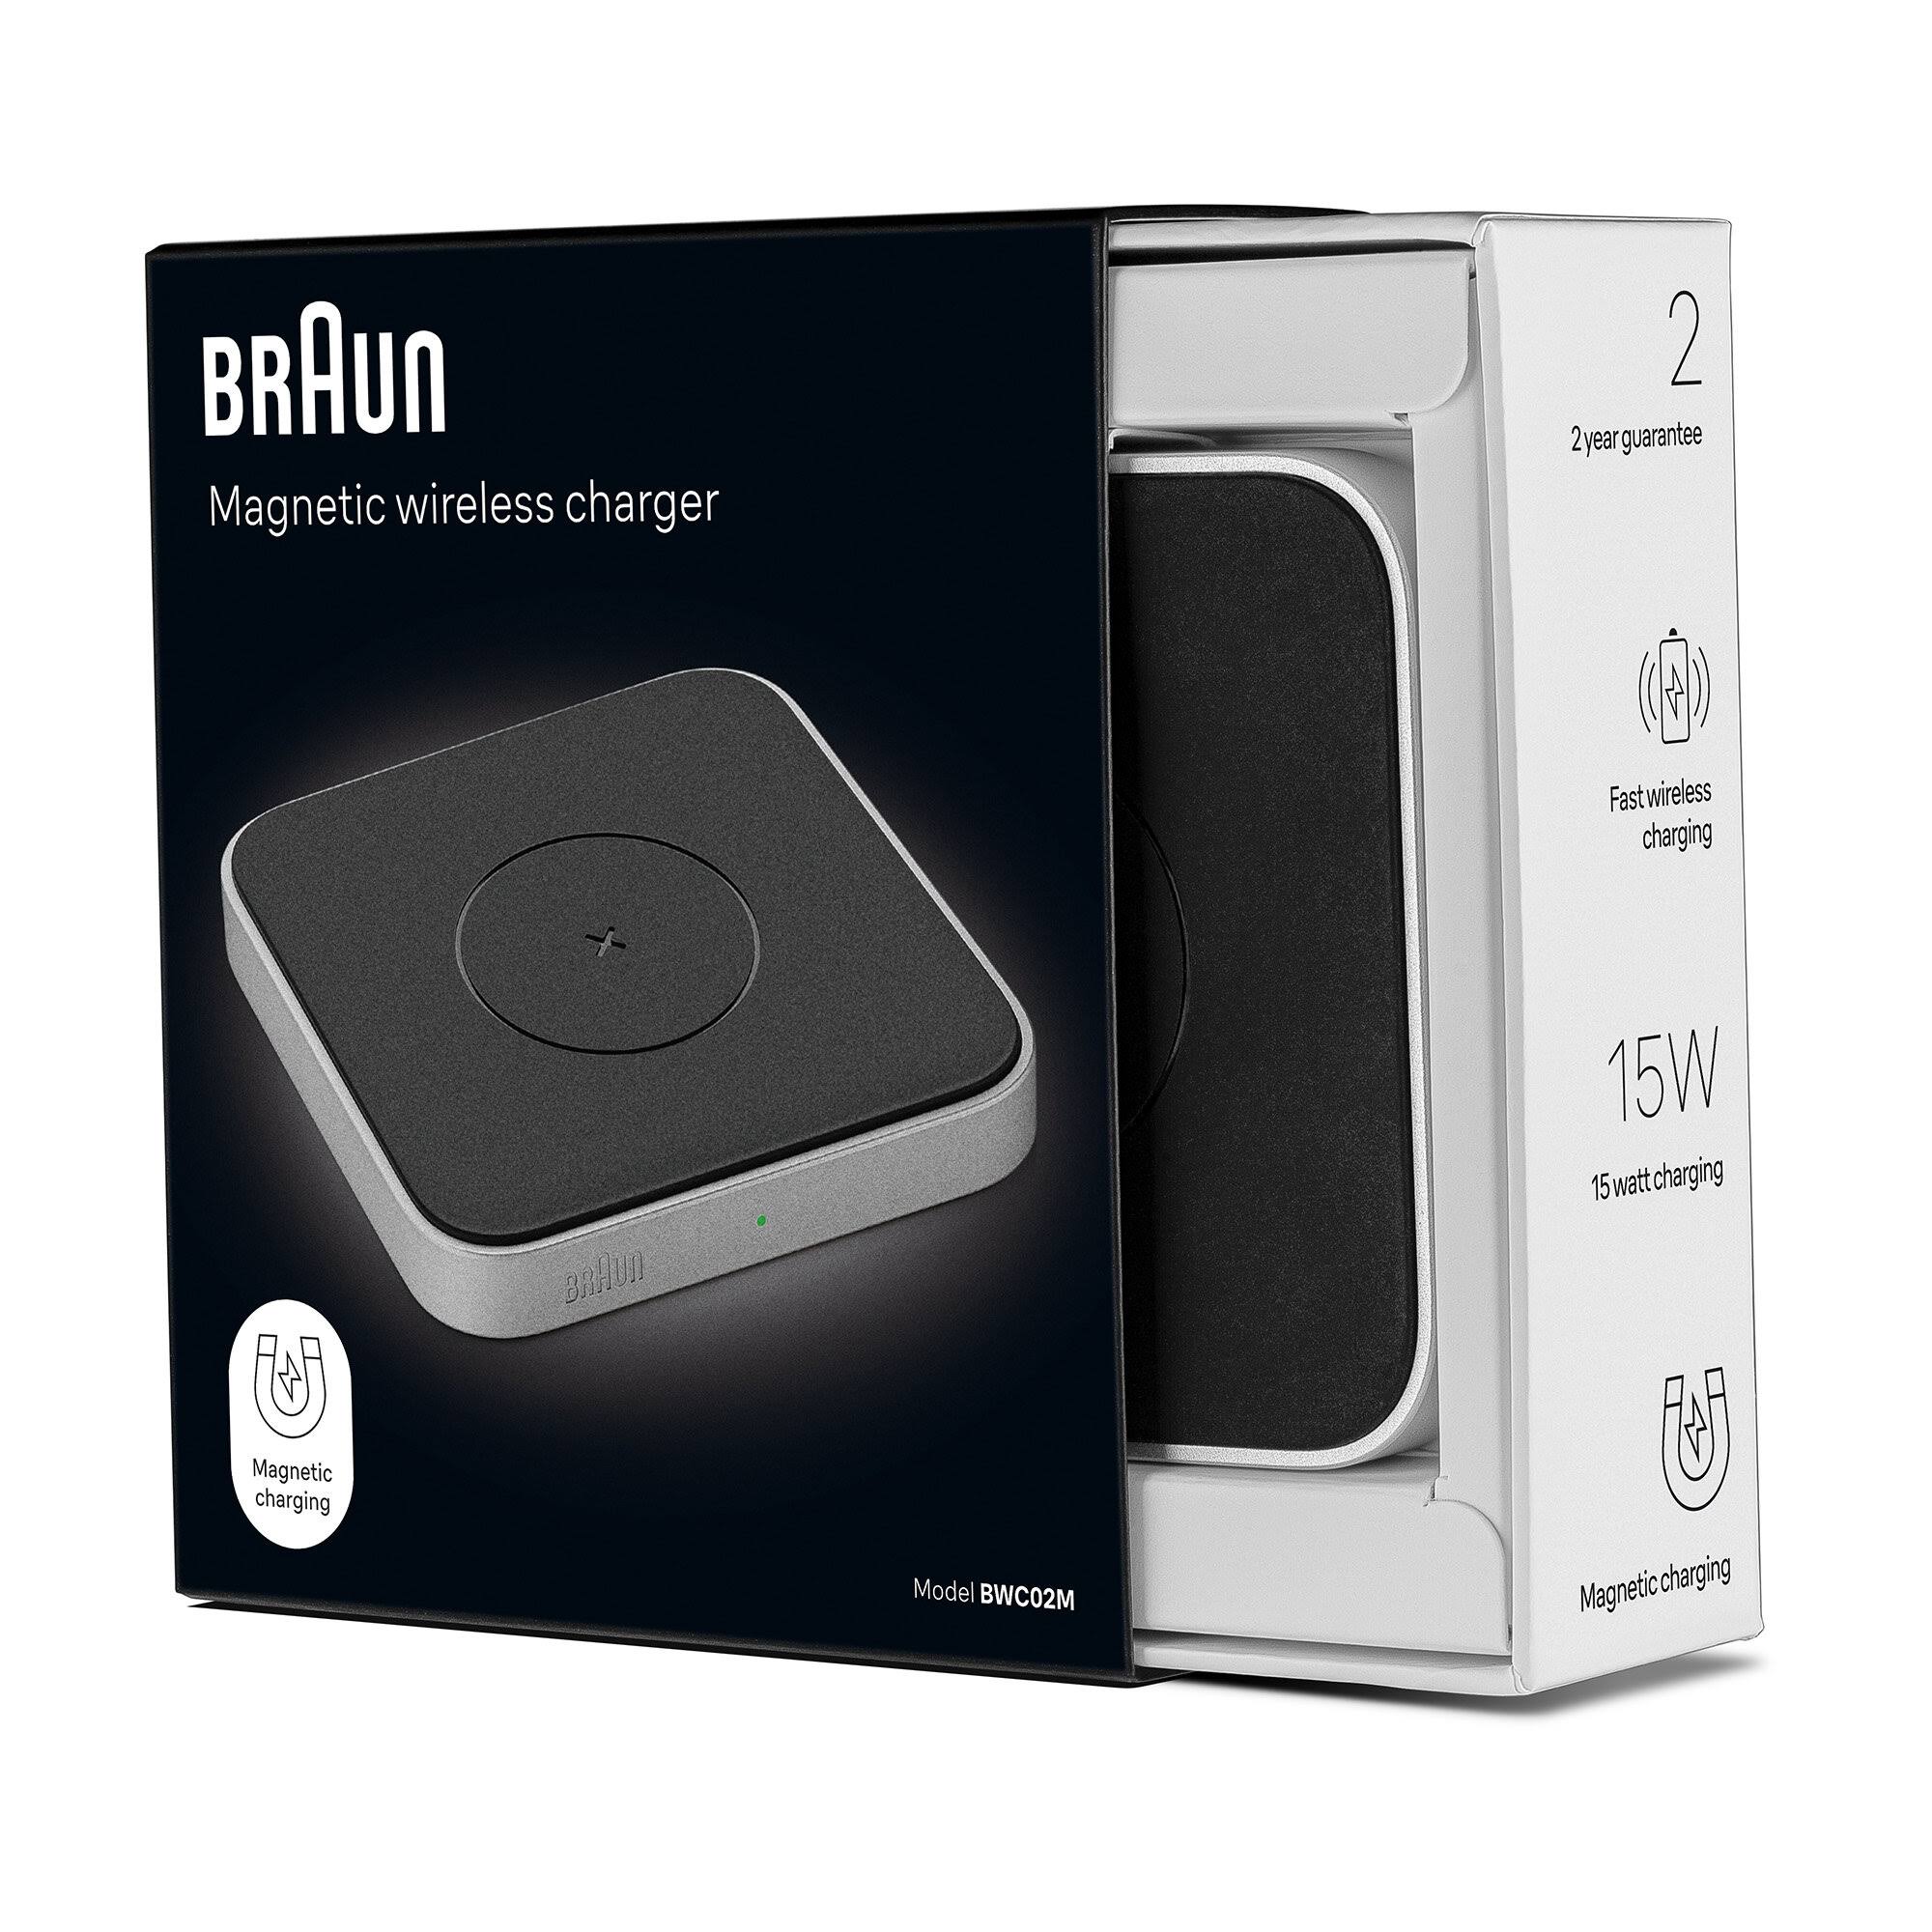 Braun BWC02M Magnetic Wireless Charger - Godshot studio